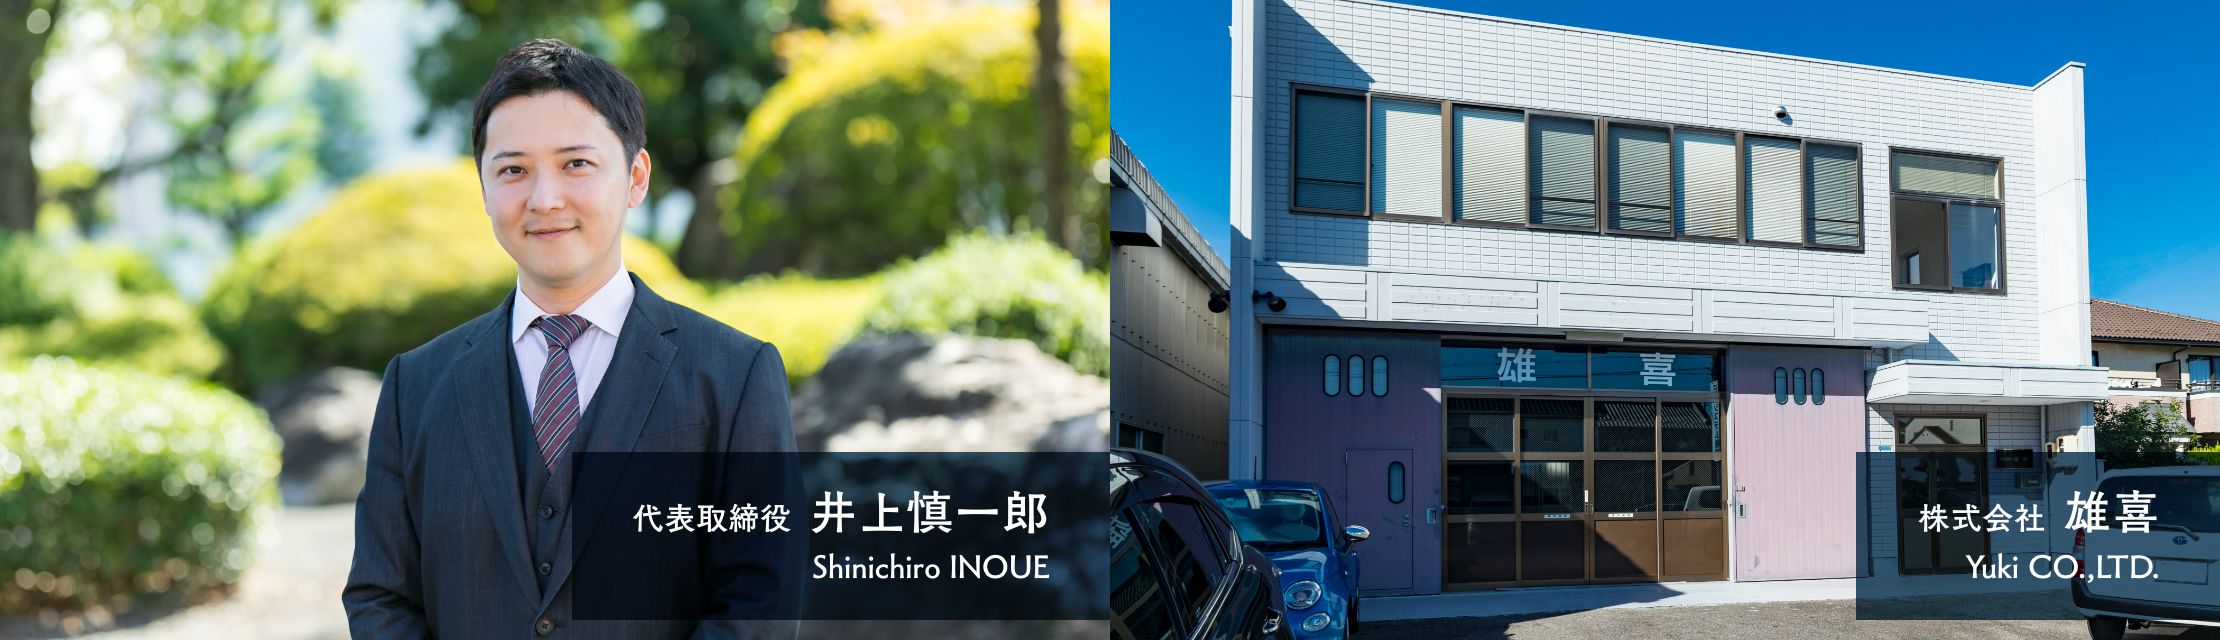 代表取締役 井上慎一郎と社屋の写真